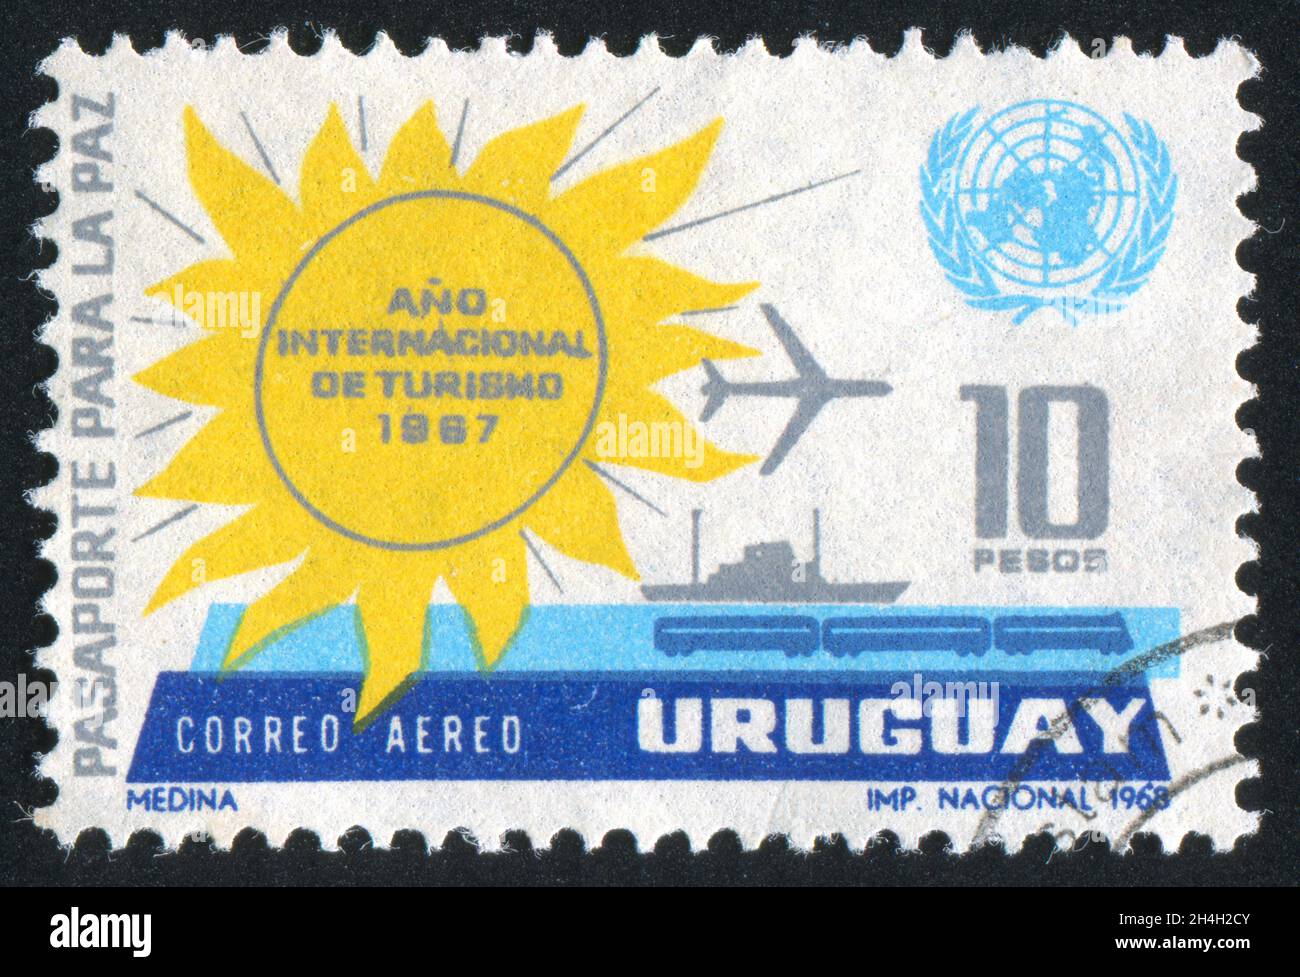 URUGUAY - VERS 1968: Timbre imprimé par l'Uruguay, montre Sun, un Emblem et moyens de transport, vers 1968 Banque D'Images